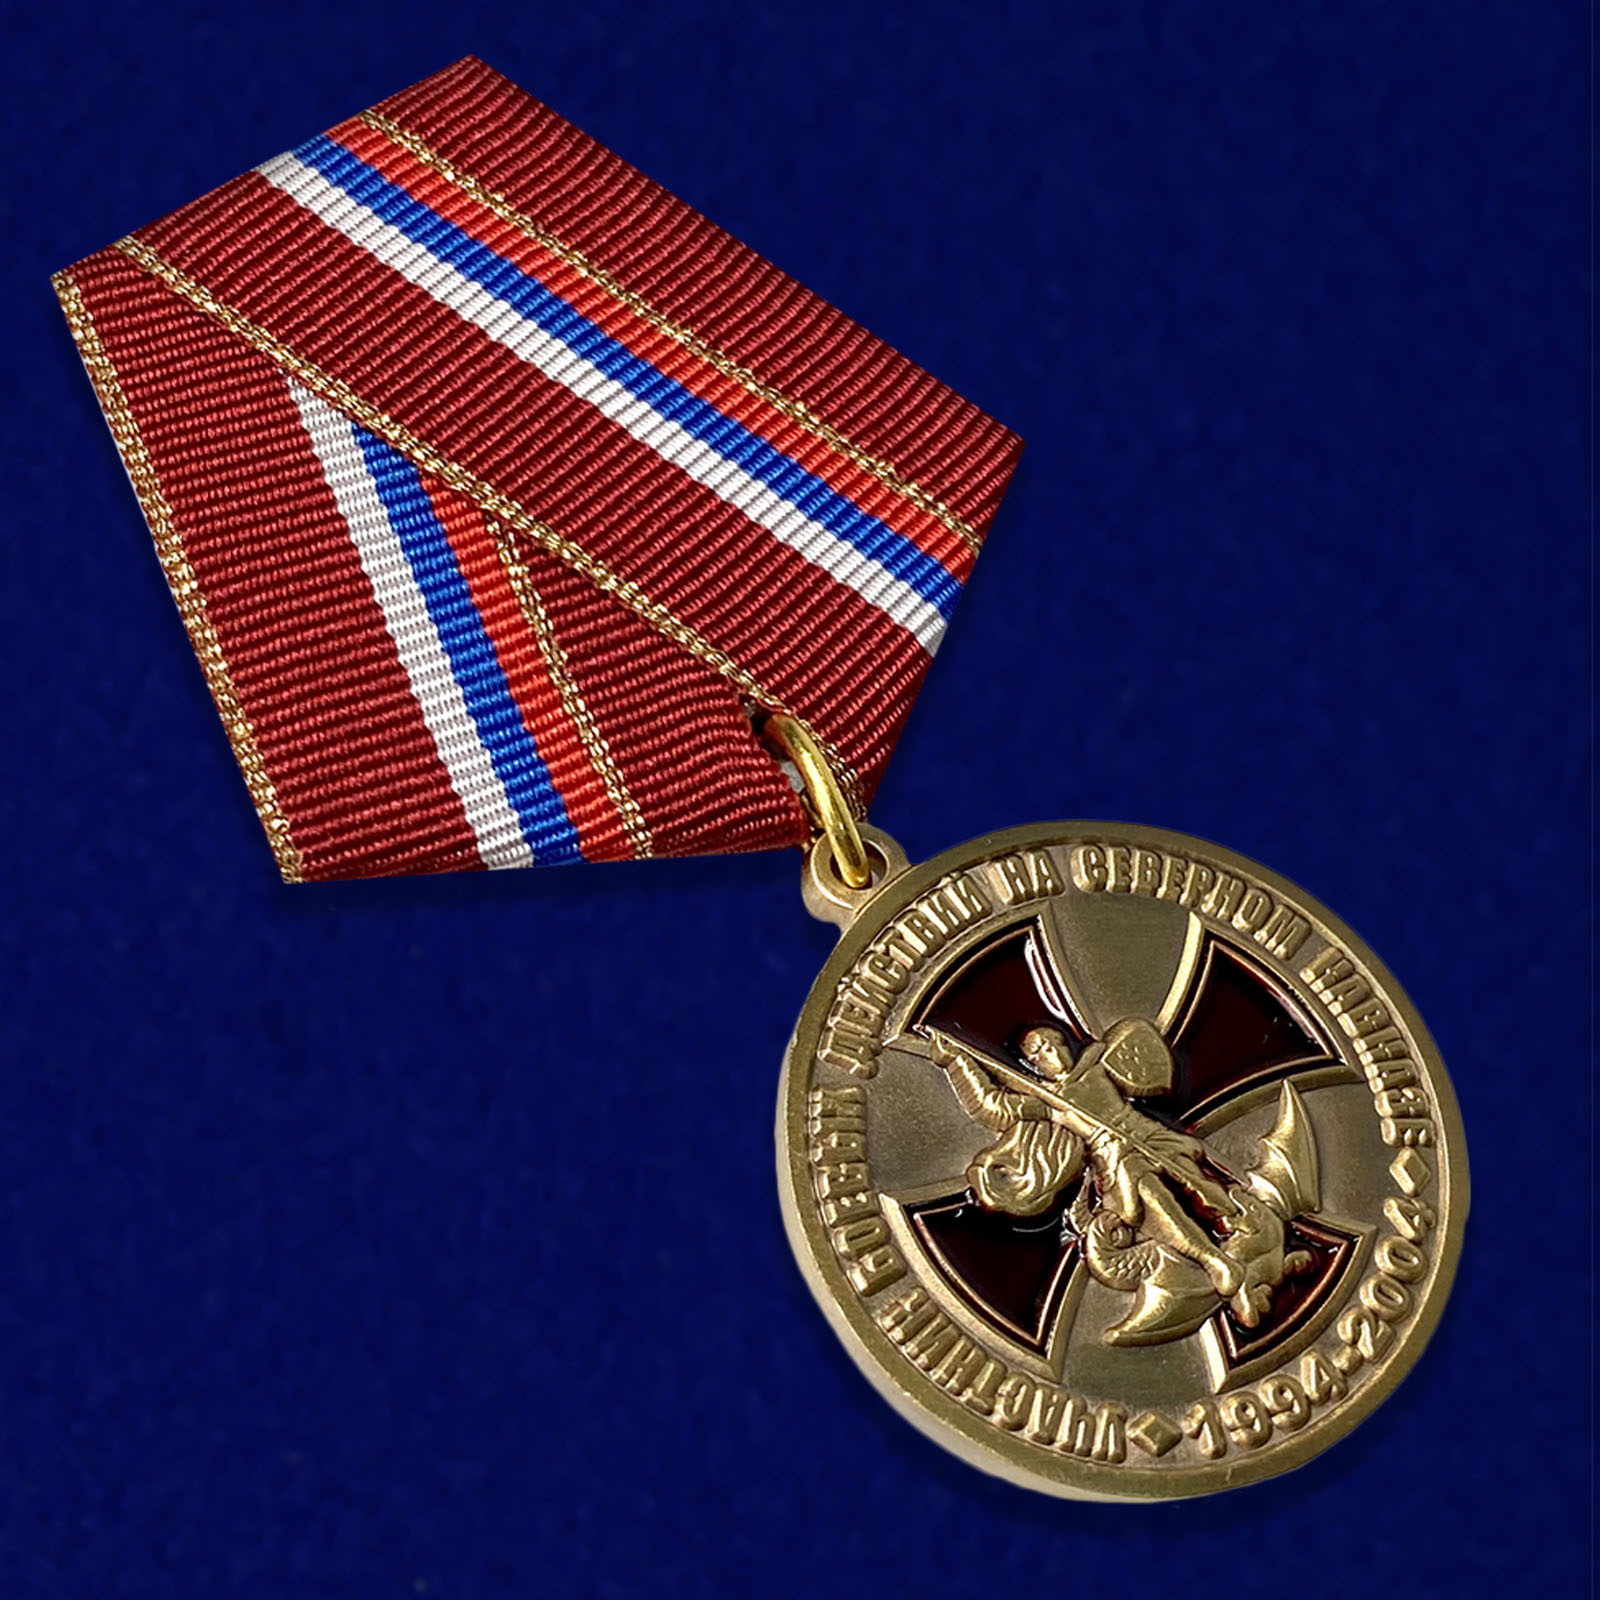 Купить медаль "Участник боевых действий на Северном Кавказе" 1994-2004